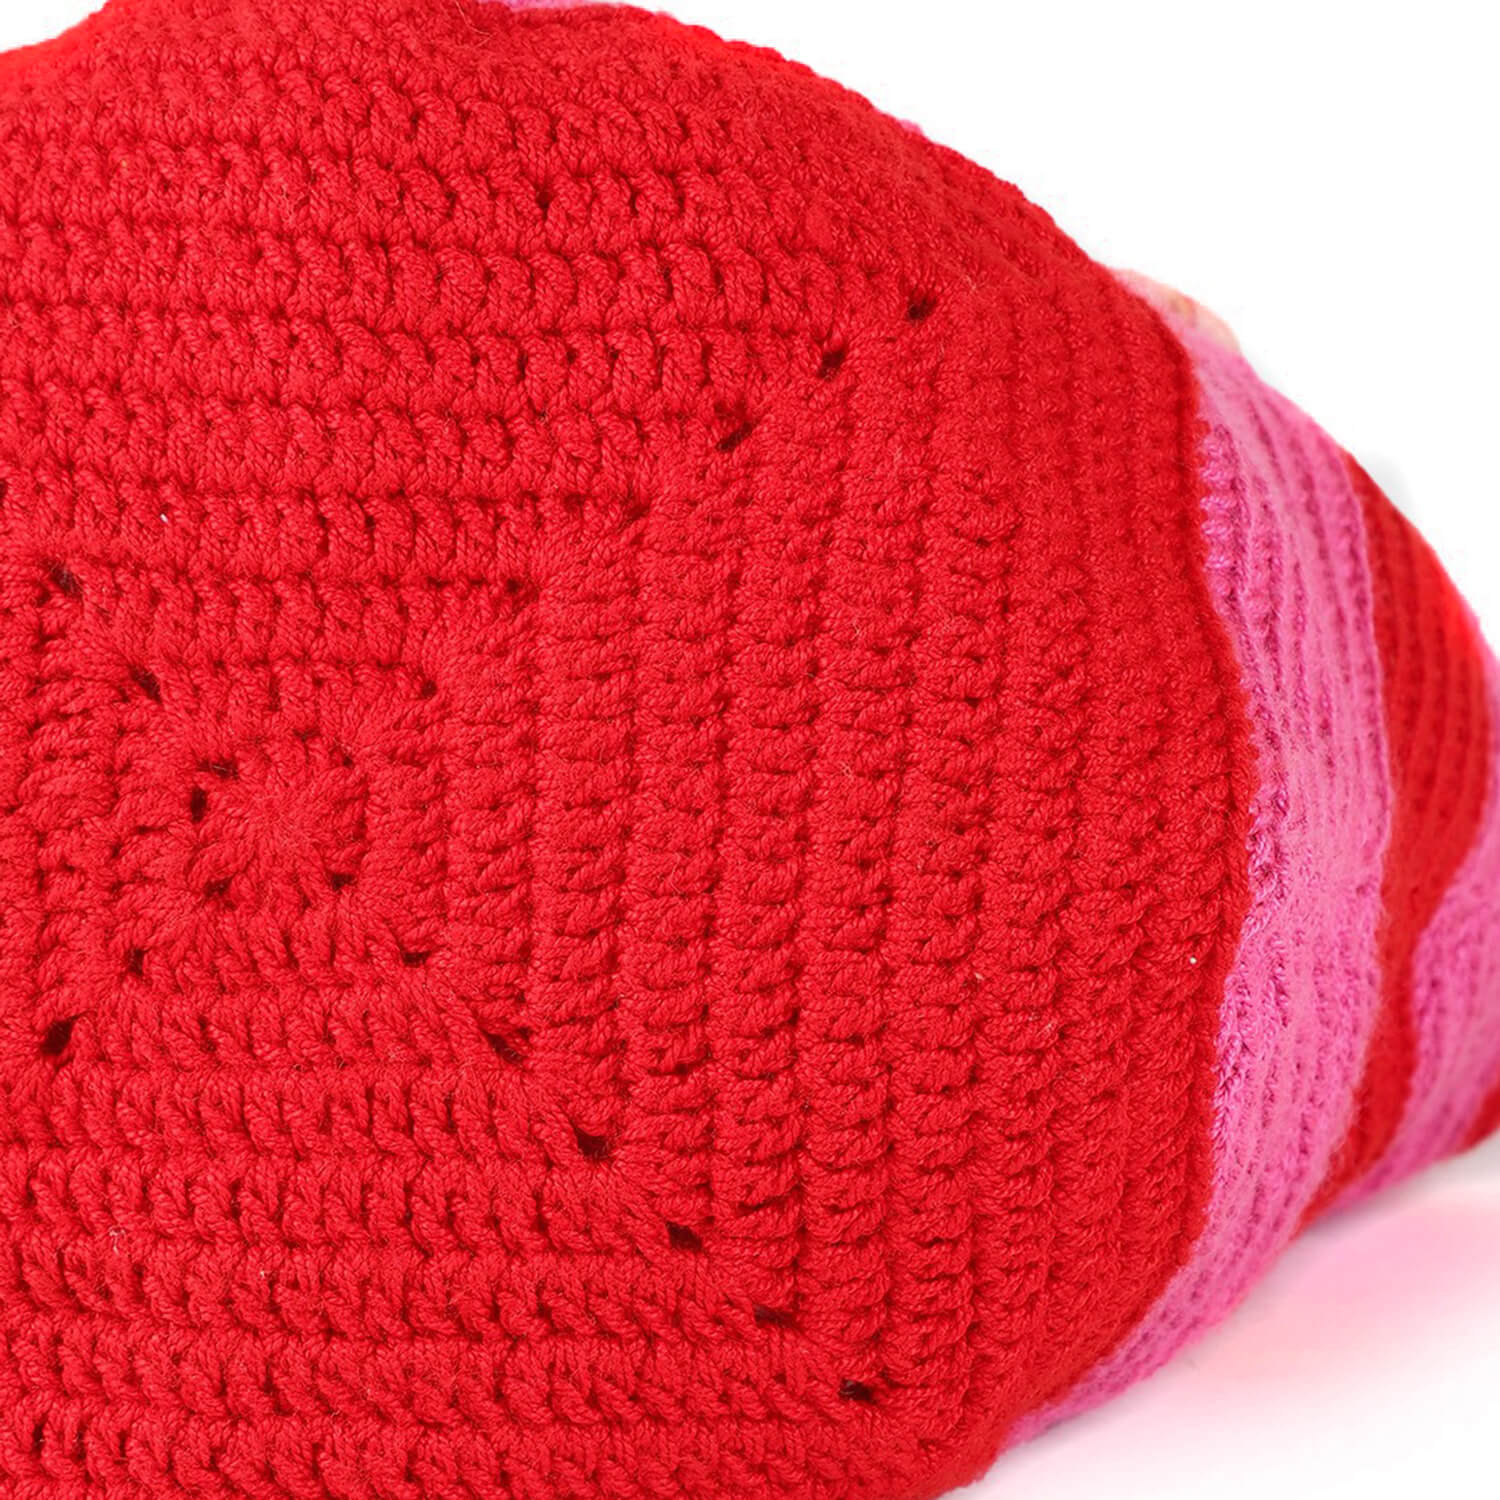 Handmade Crochet Hobo Market Bag - Red, Pink 2785